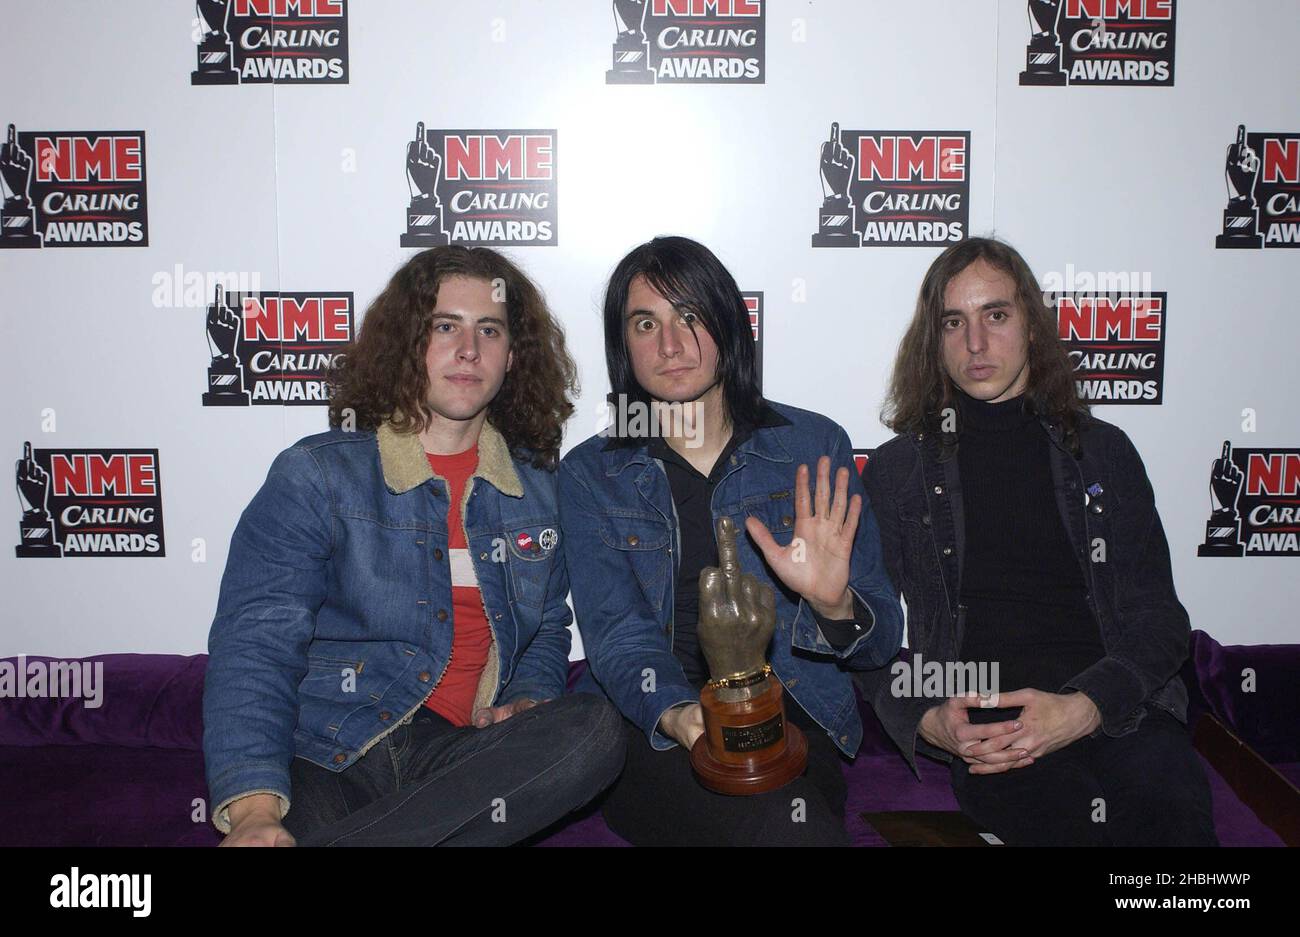 Die Datsuns fotografiert bei den NME Carling Awards im PoNaNa in London. 3/4 Länge. Stockfoto